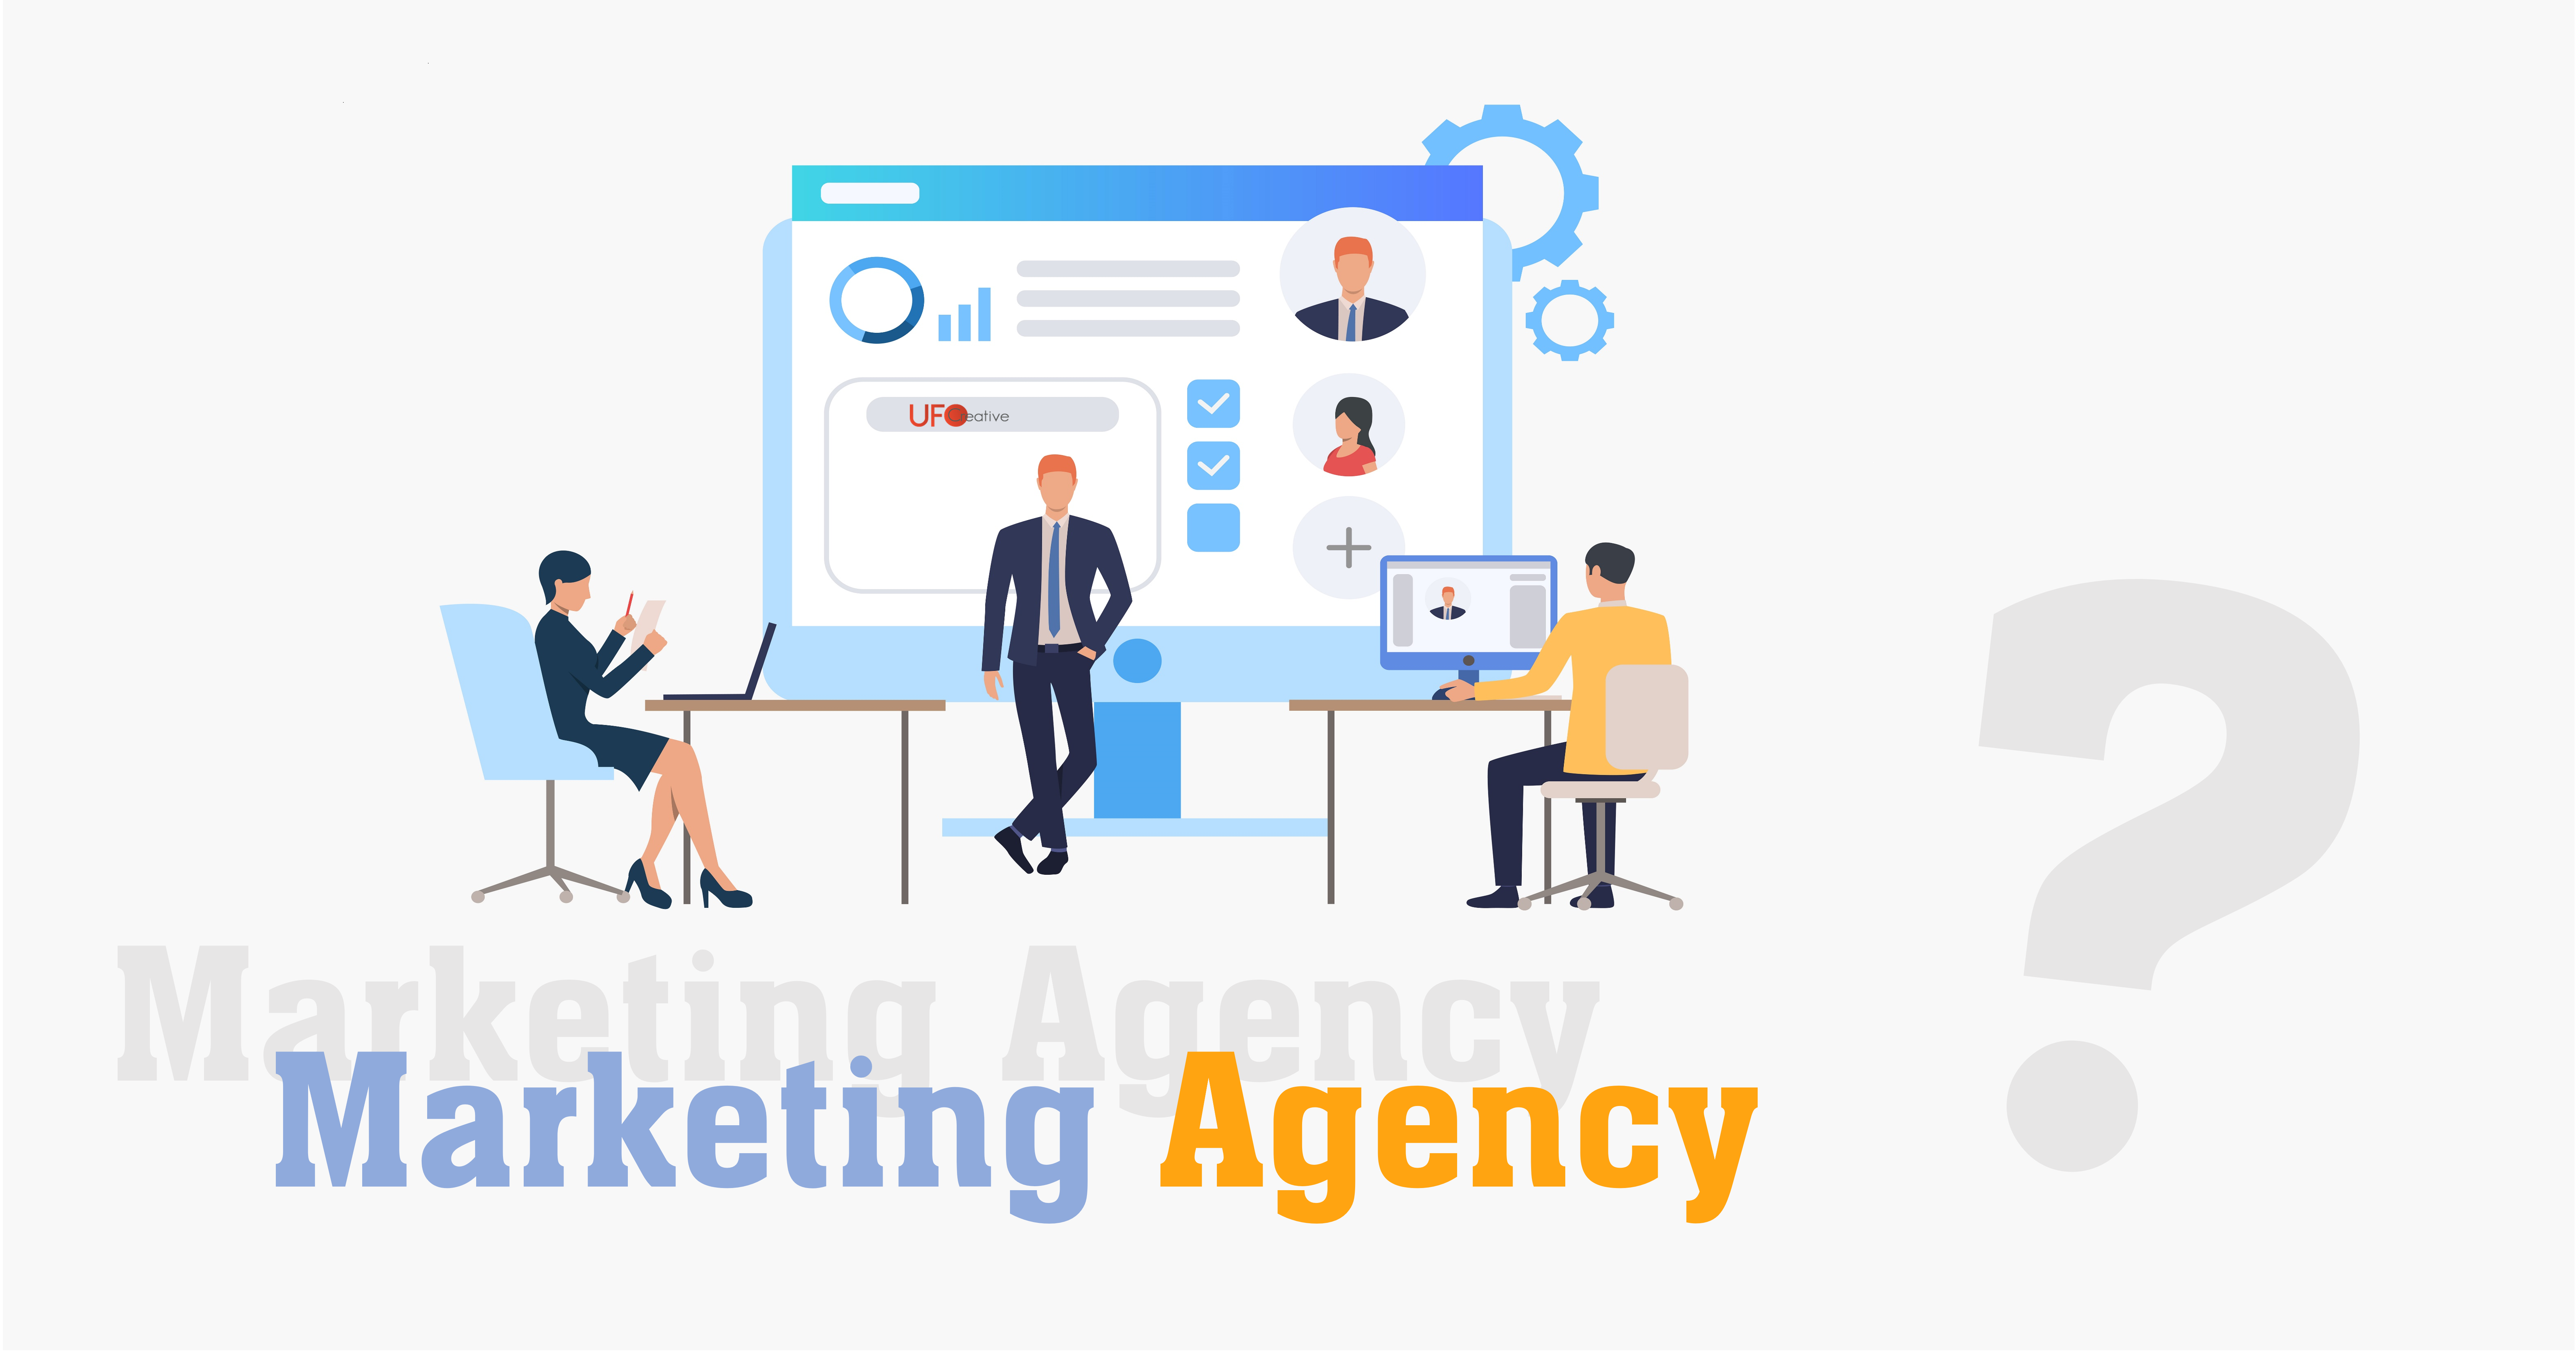 Agency là gì và marketing agency làm gì?